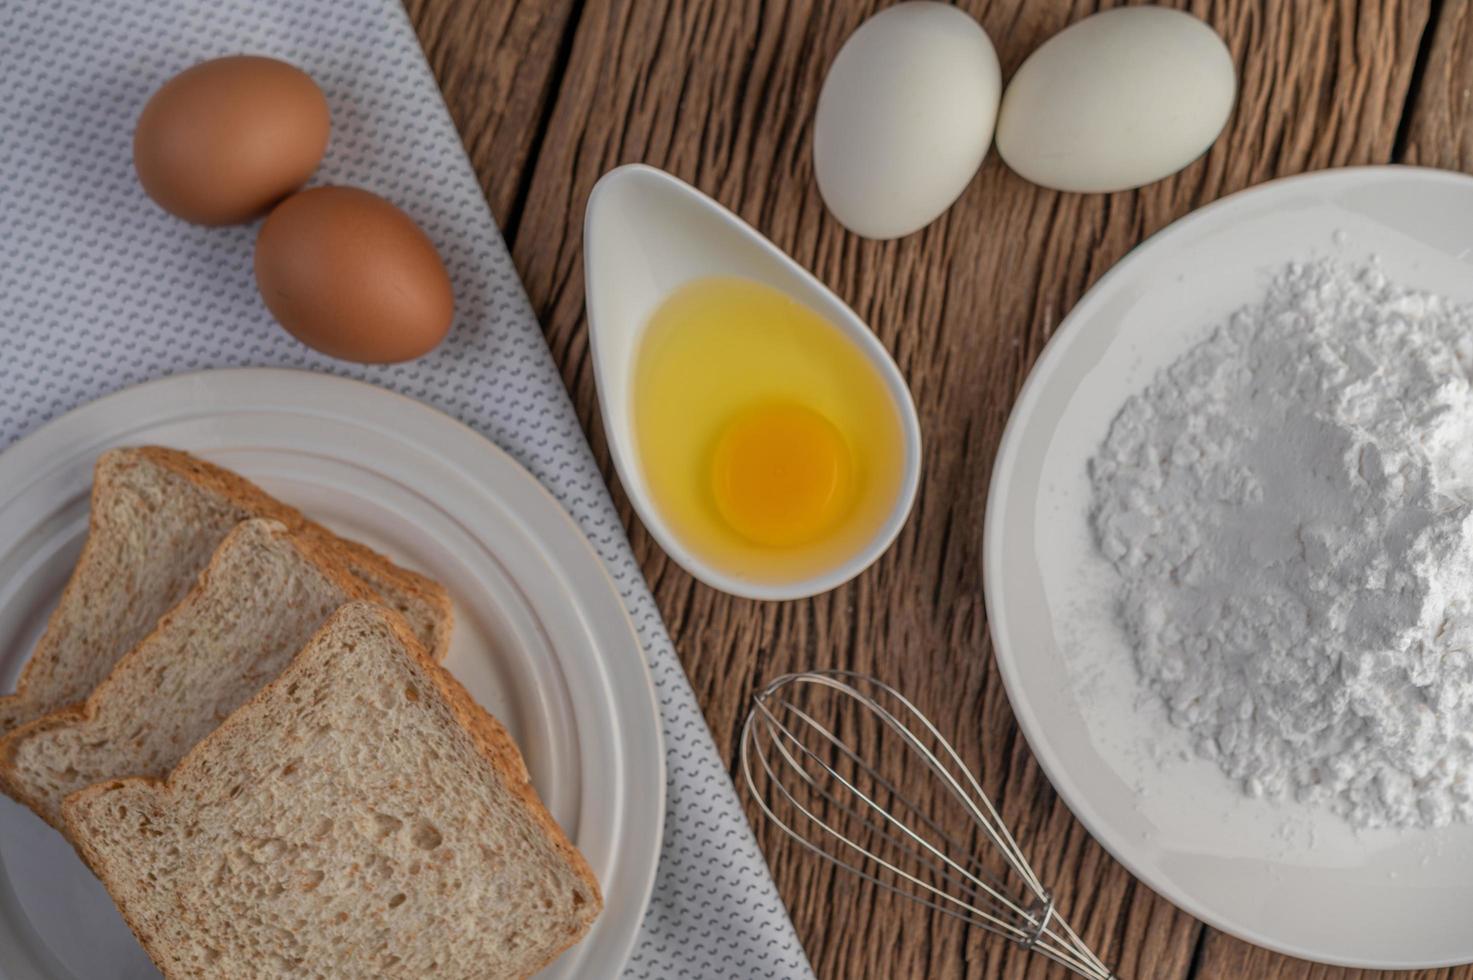 ägg, bröd och tapiokamjölingredienser foto